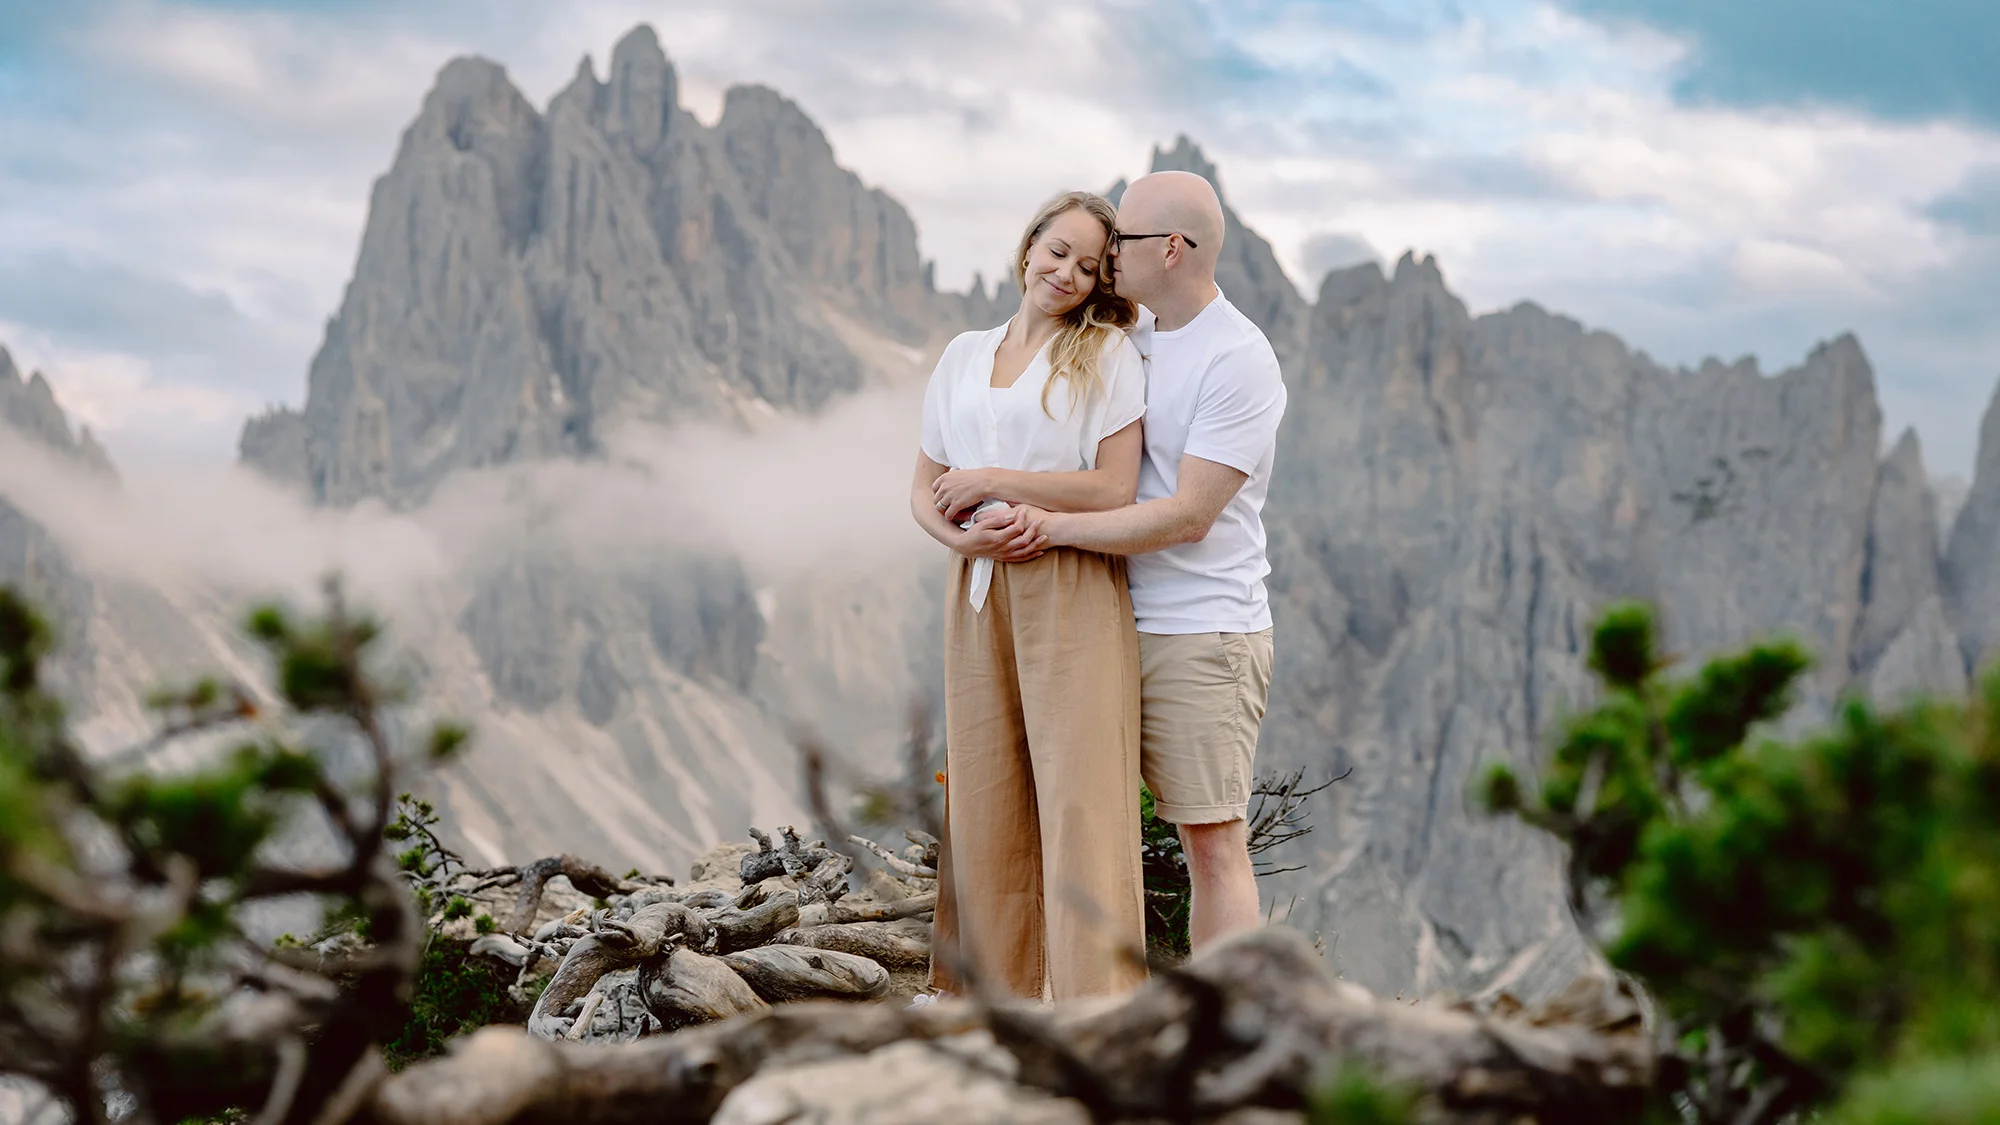 Dolomites couple Photoshoot